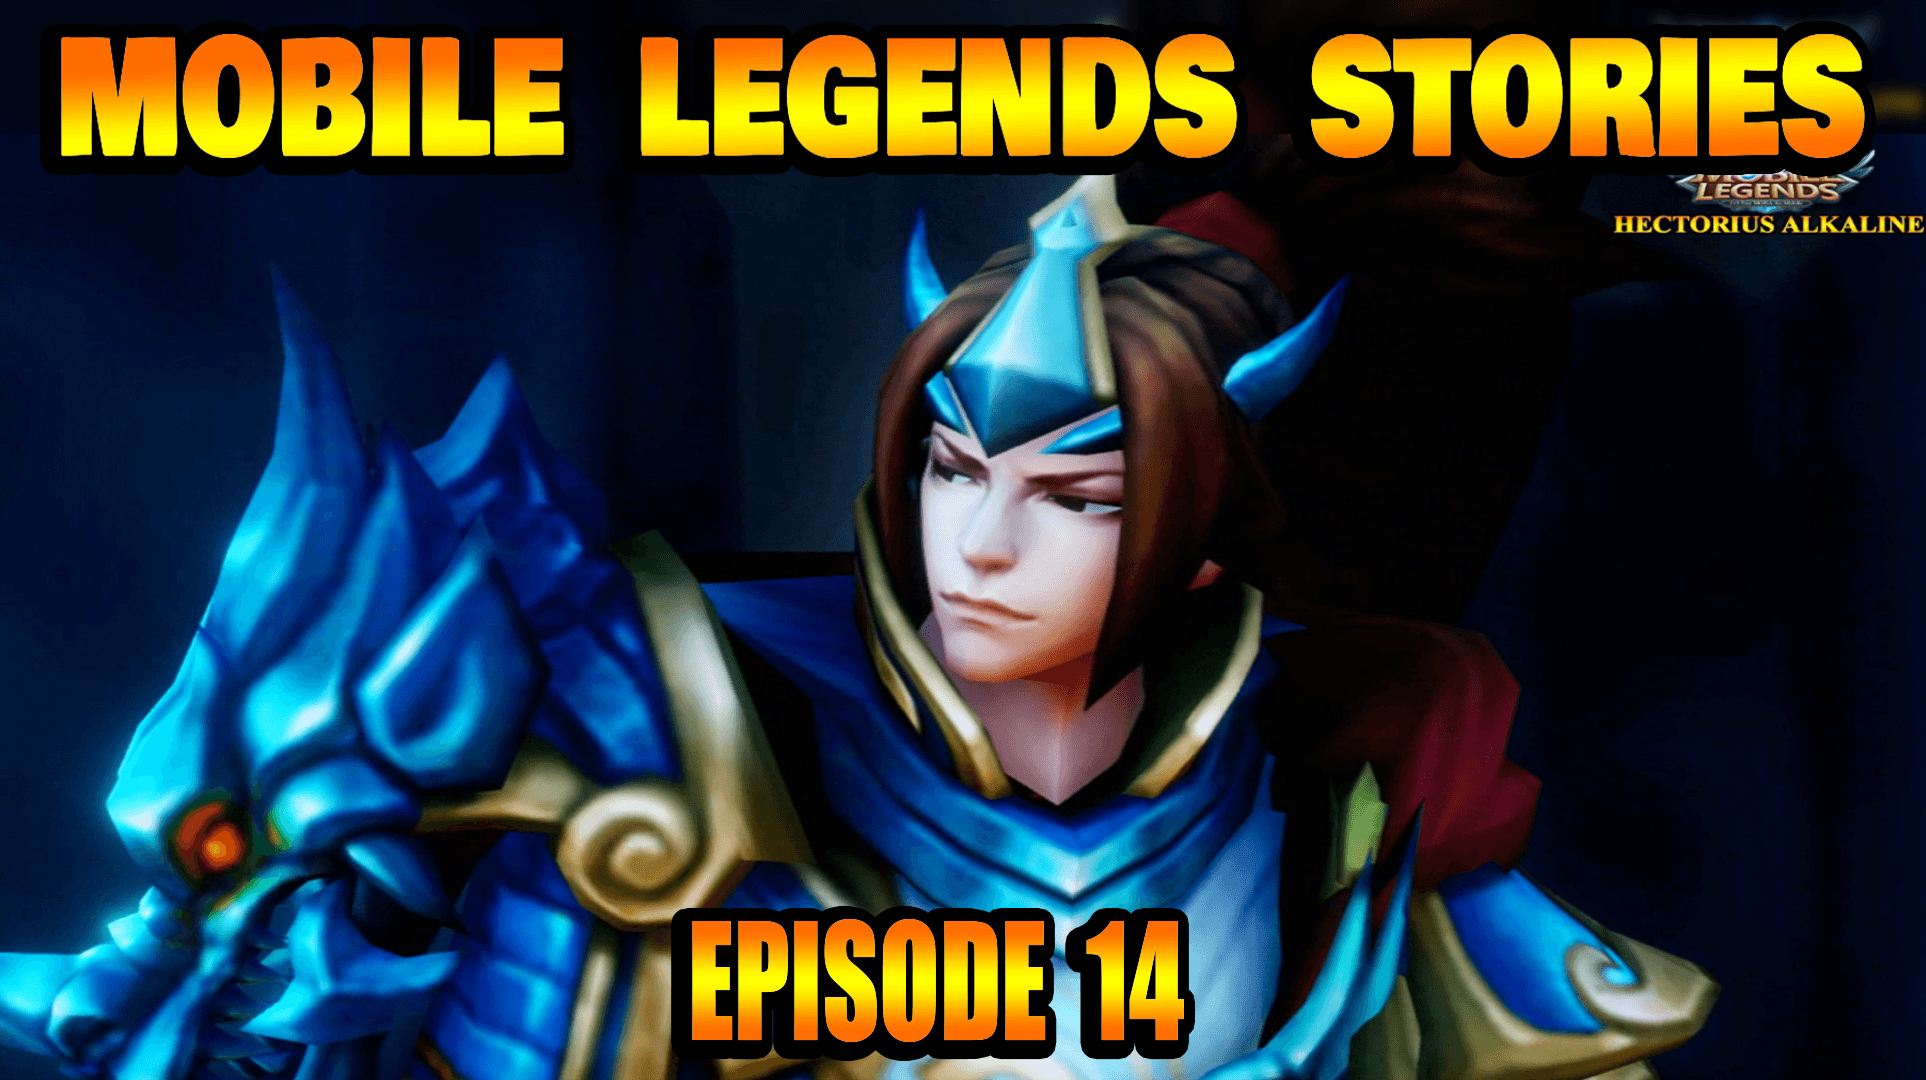 Mobile Legends Stories Episode 14